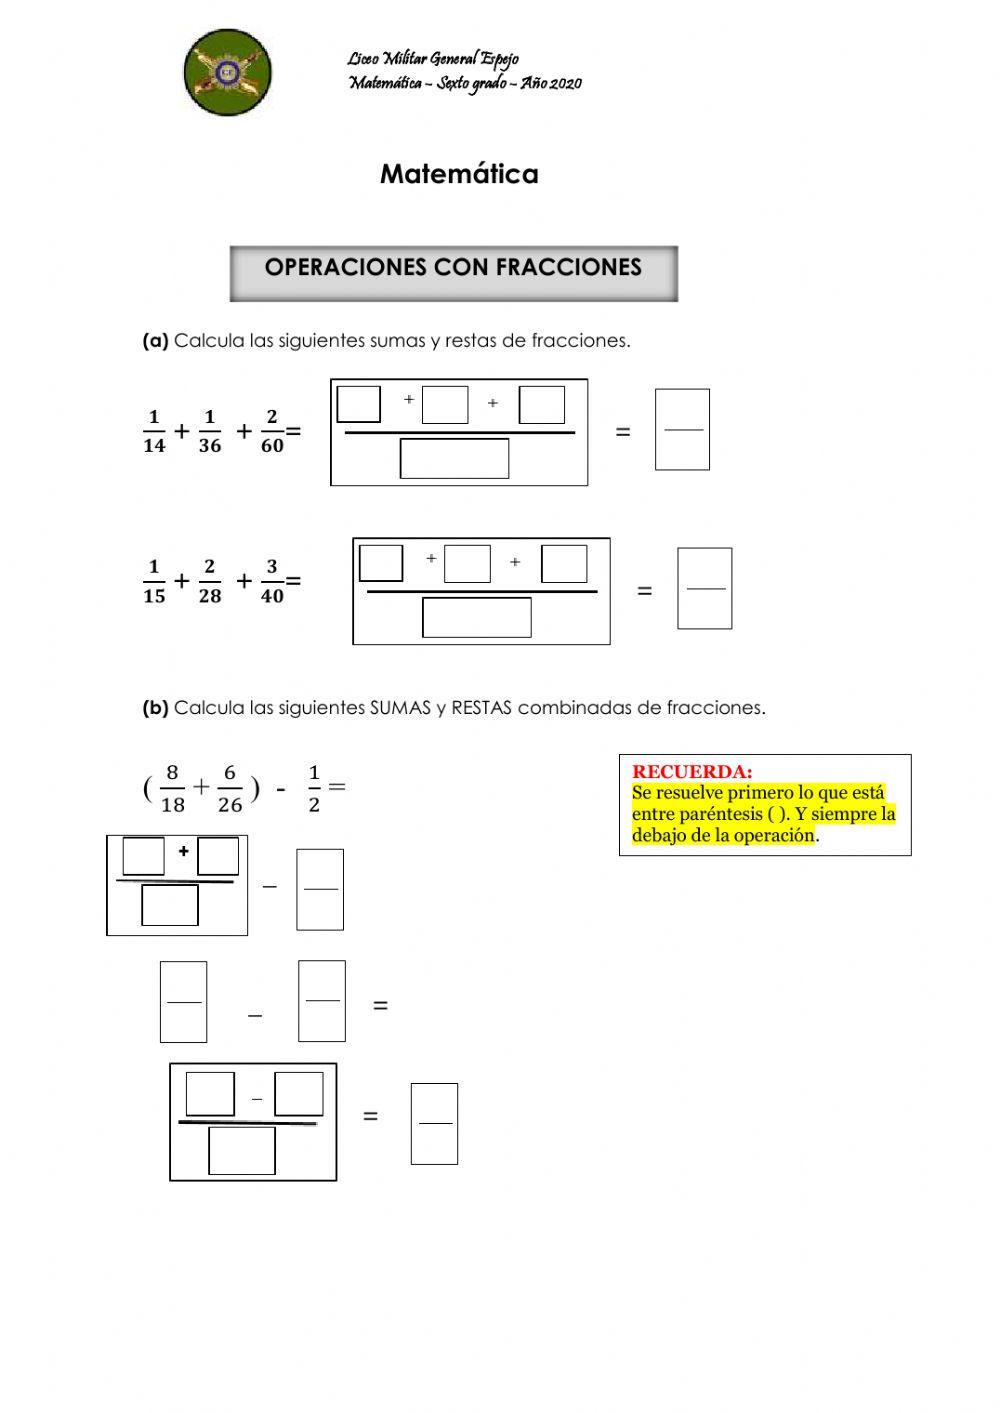 Operaciones (sumas y restas) c-fracciones